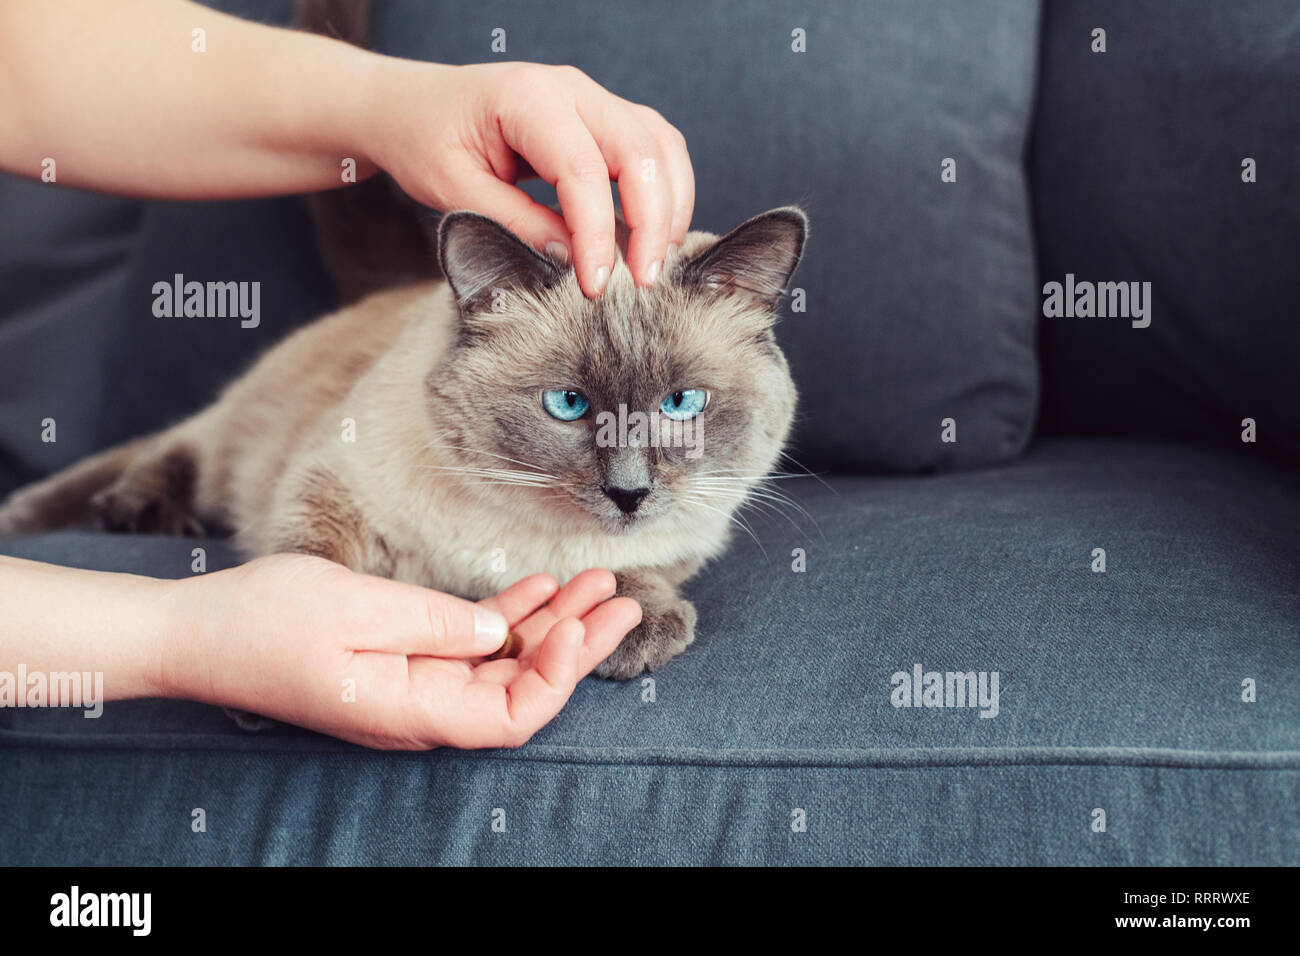 Tierhalter füttern Katze mit Trockenfutter Granulat aus seiner Hand Palm. Schöne Colourpoint inländische Katze Tier Katze mit blauen Augen auf der Couch liegend s Stockfoto